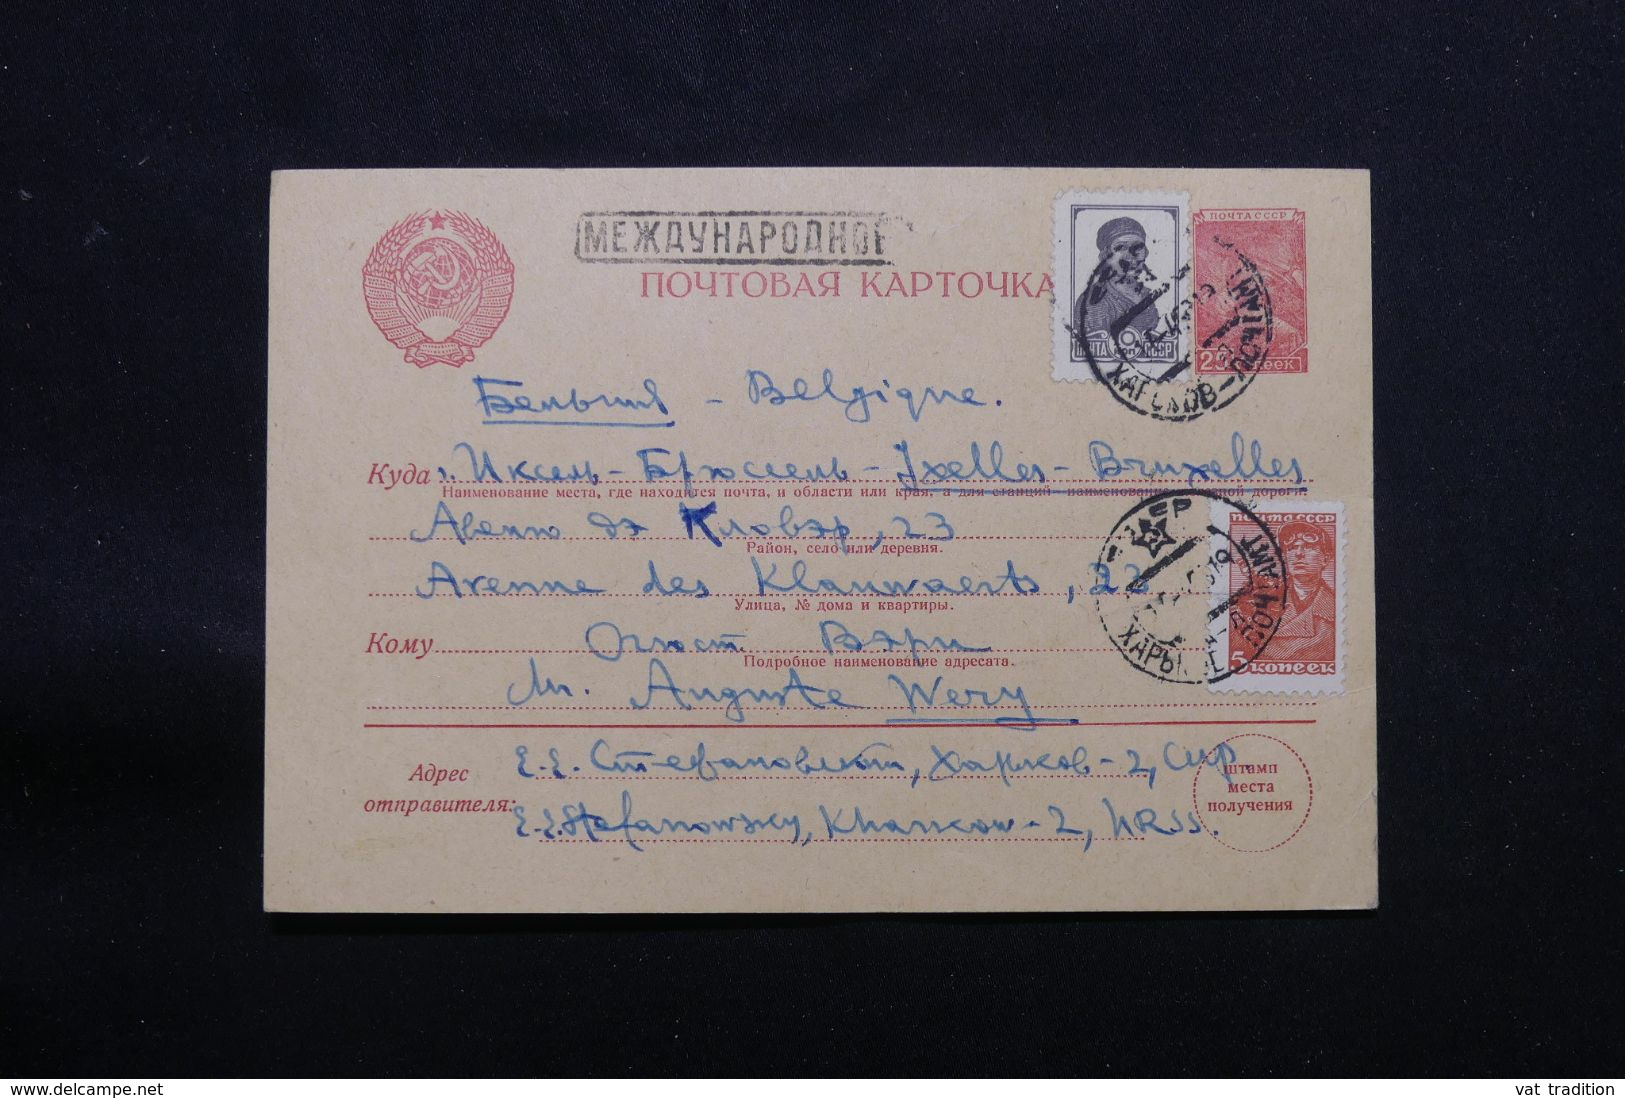 U.R.S.S. - Entier Postal + Compléments De Kharkov En 1958 Pour La Belgique - L 71127 - 1950-59